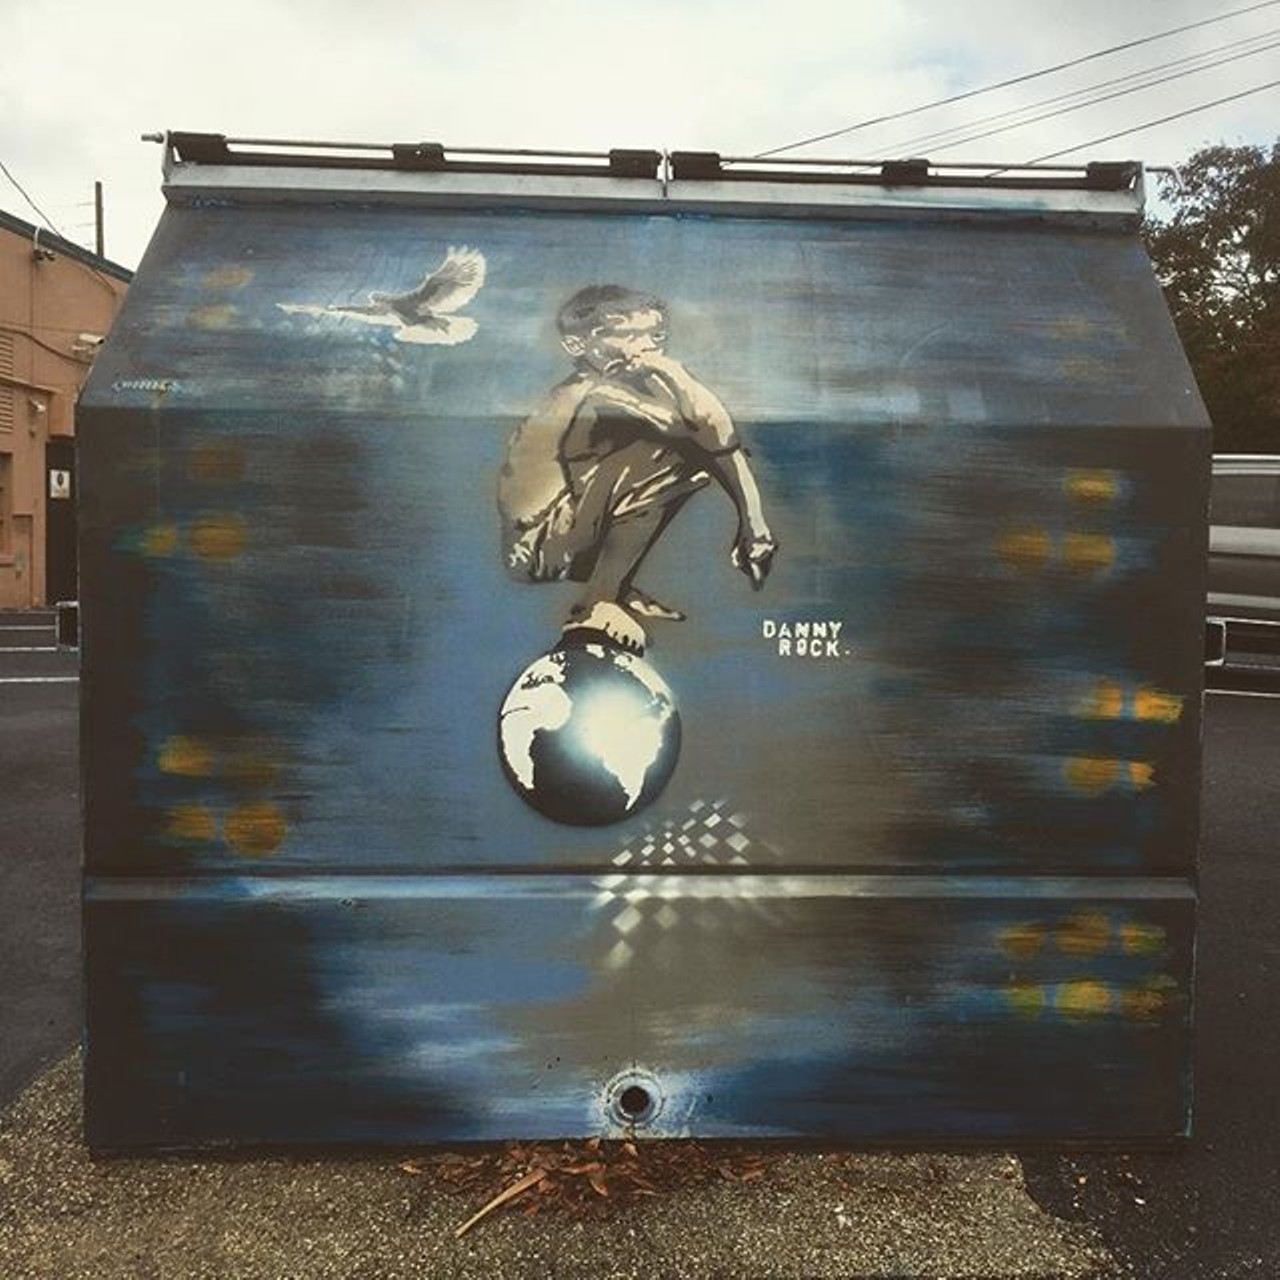 Instagram user threadandthrum found this cool street art in Mills 50 last weekend.